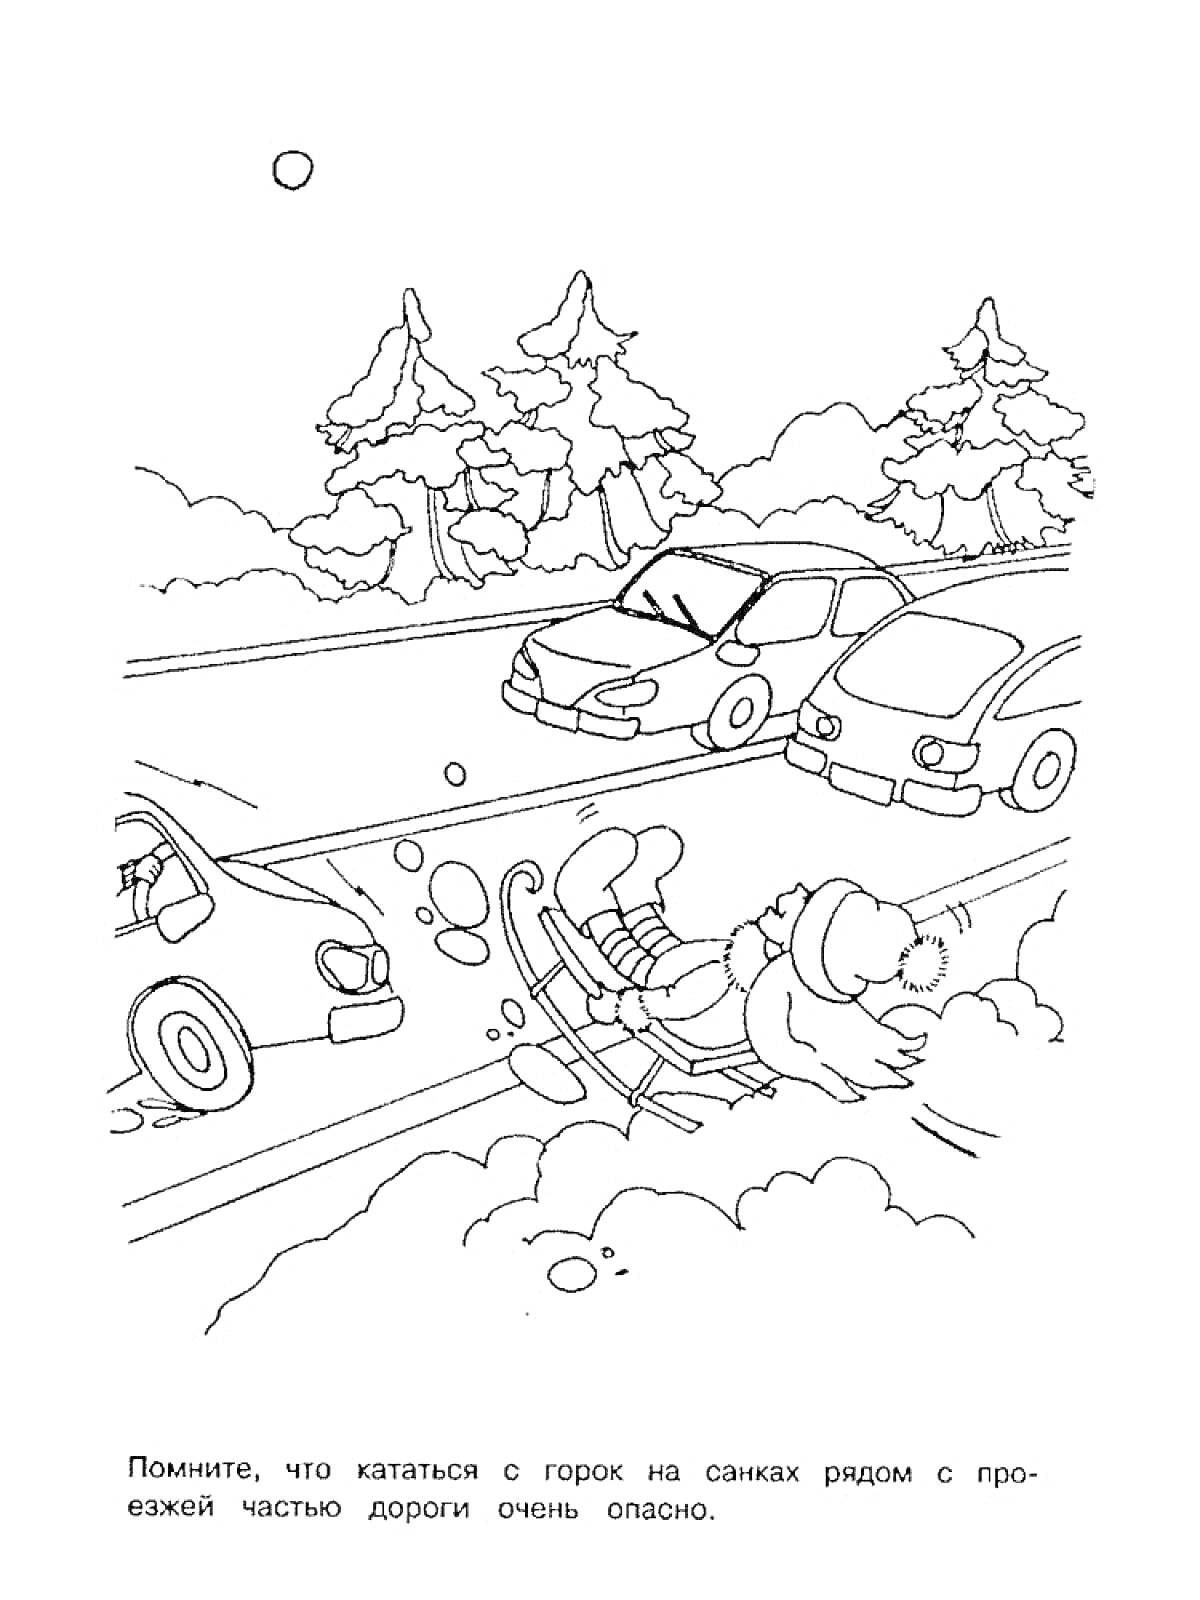 Раскраска Ребёнок на санках съезжает с горки и попадает на проезжую часть, где едут автомобили